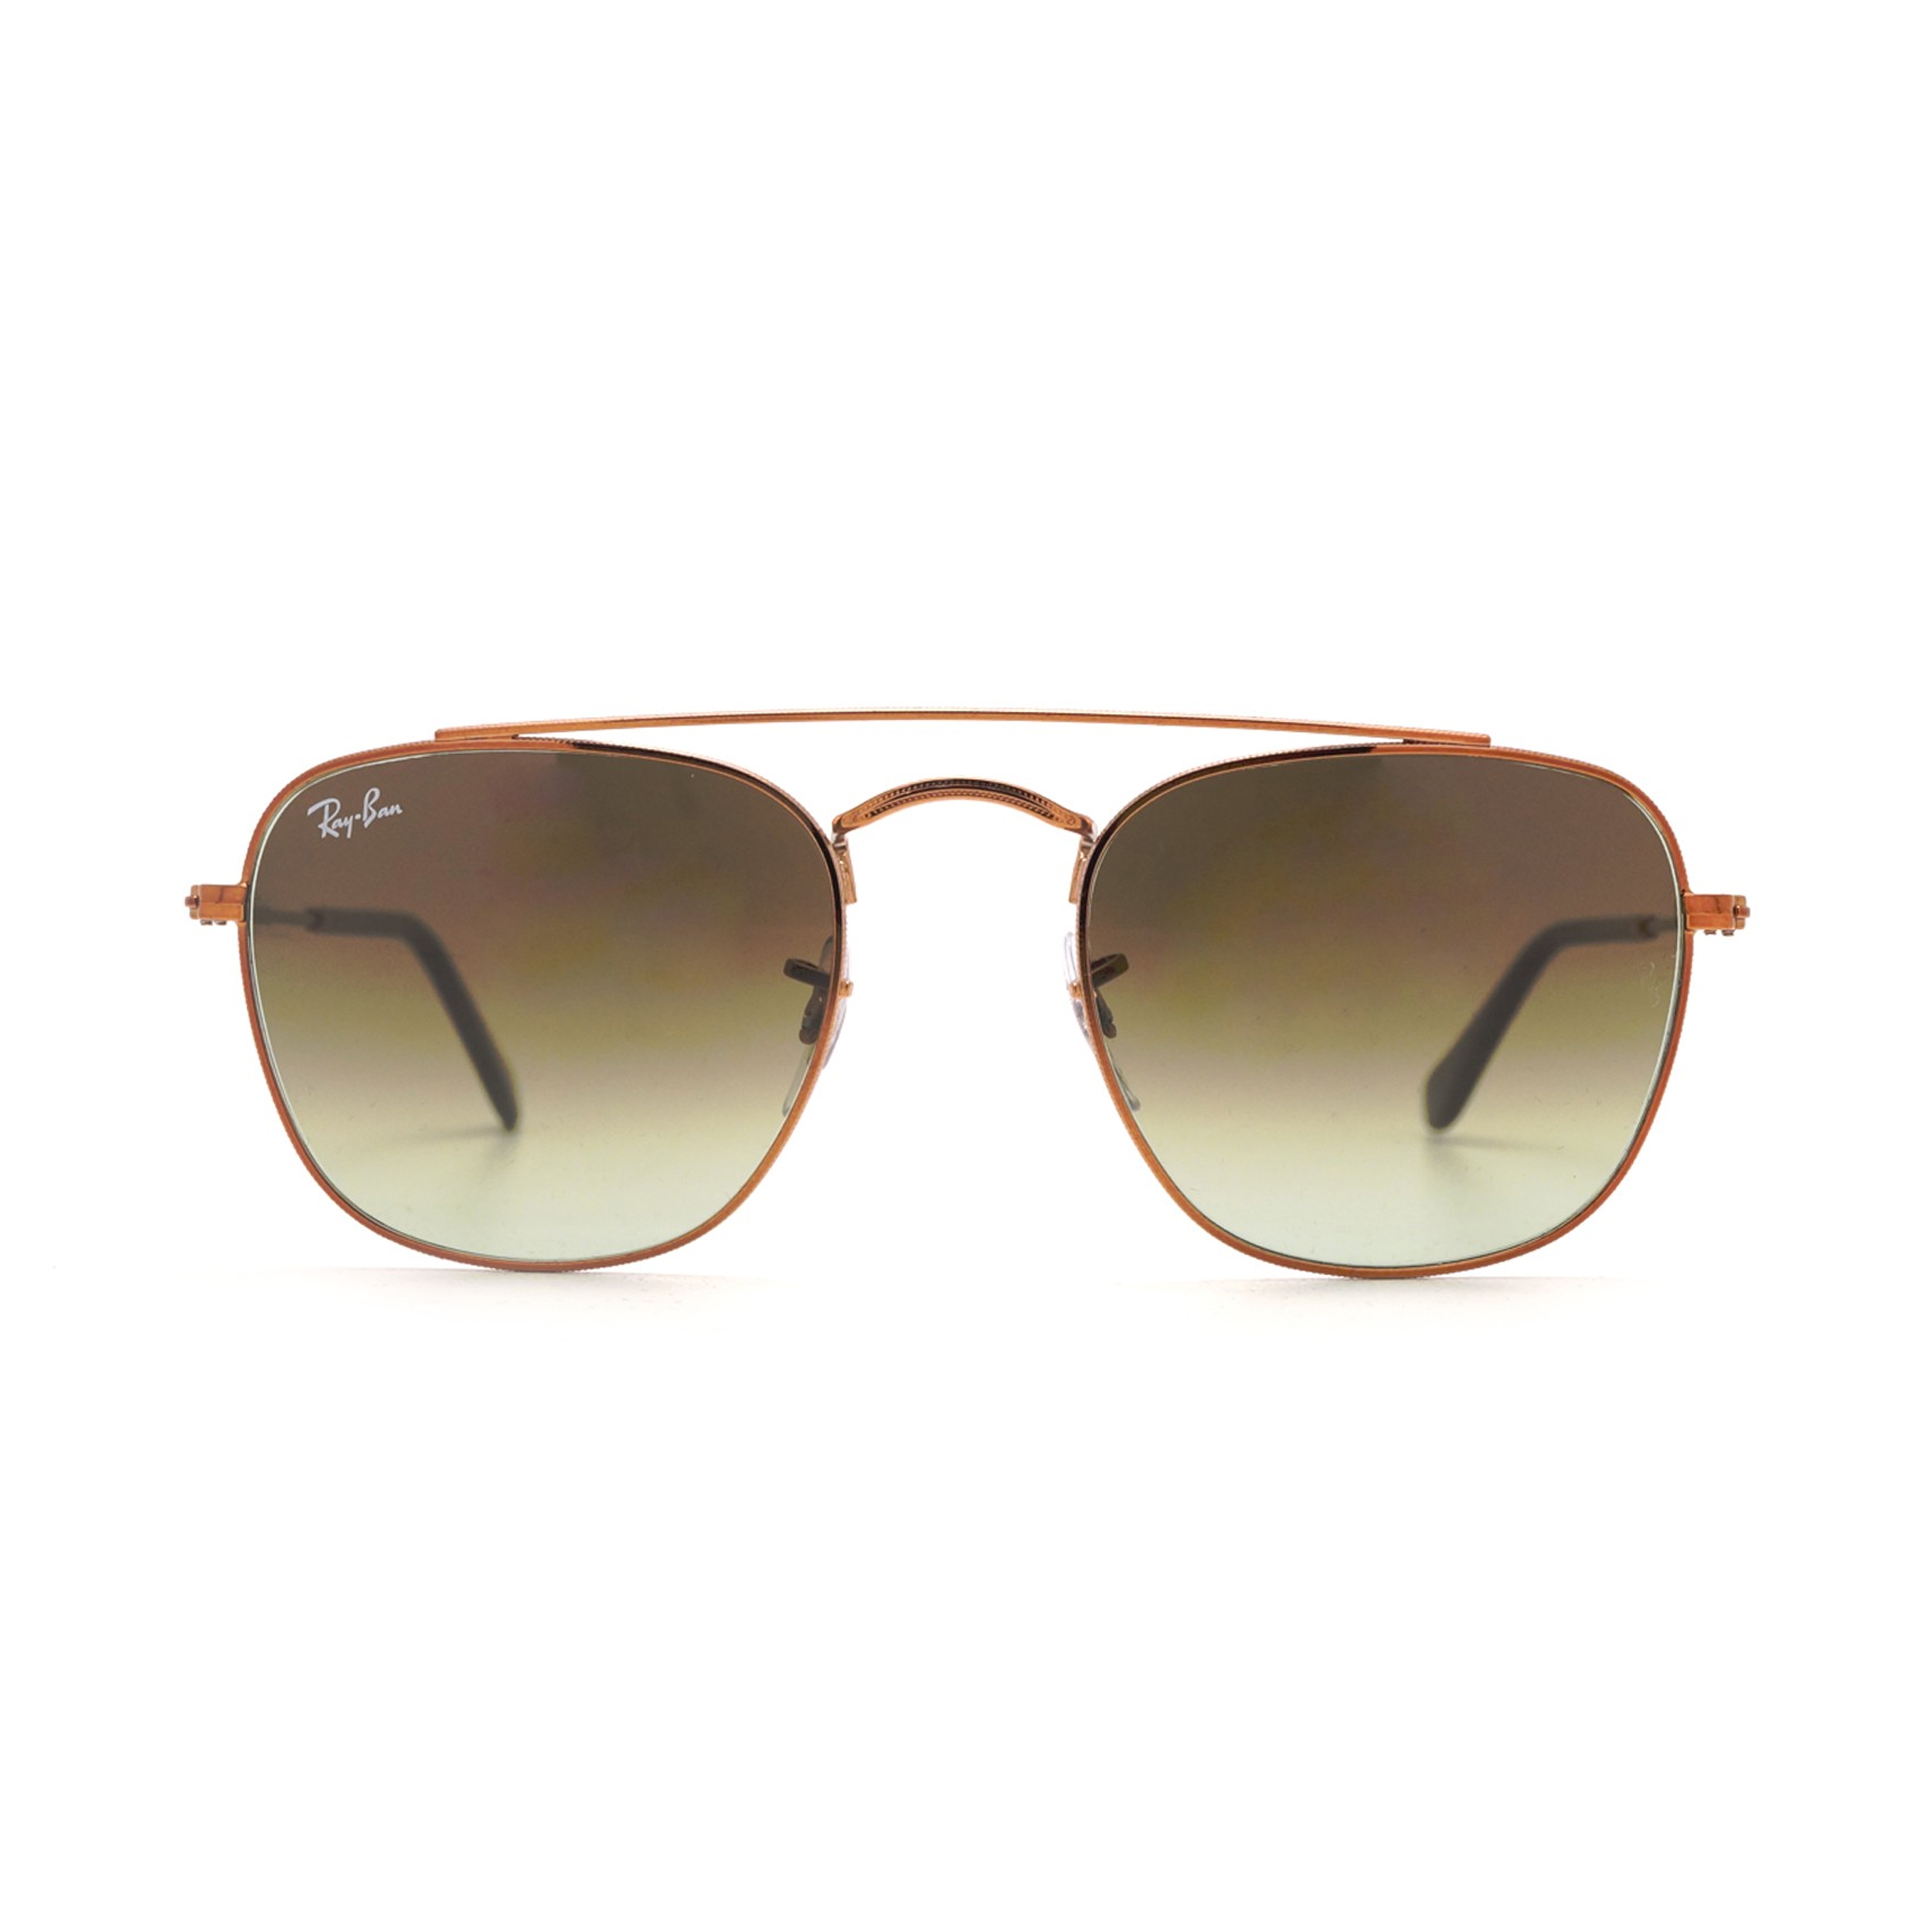 عینک آفتابی ری بن مدل 3557-9002/A6-51 - طلایی - 2